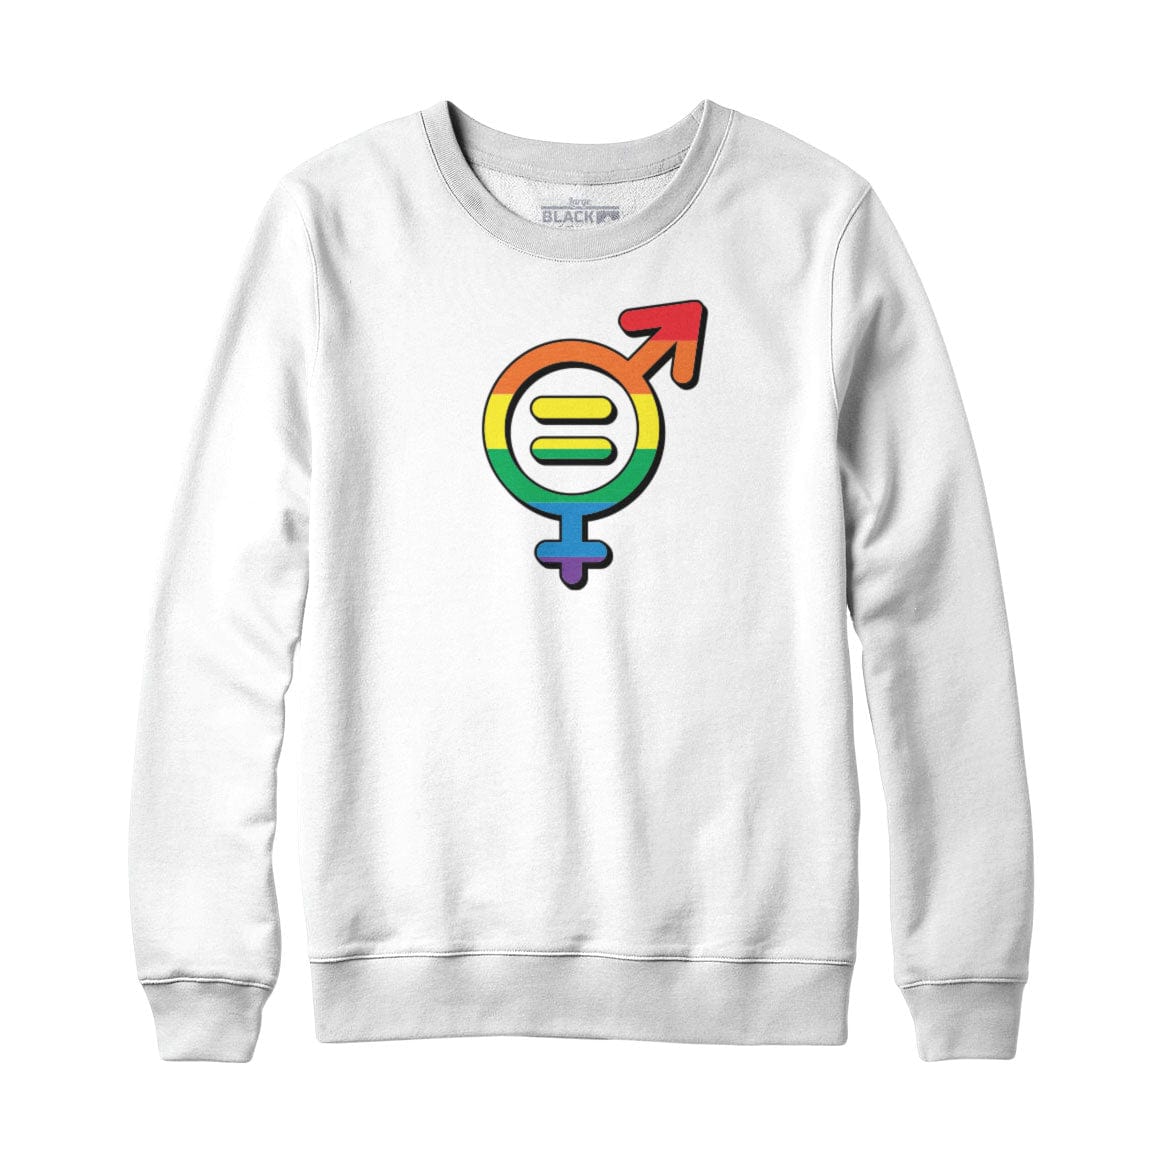 Pride Gender Equality Icon Sweatshirt Hoodie